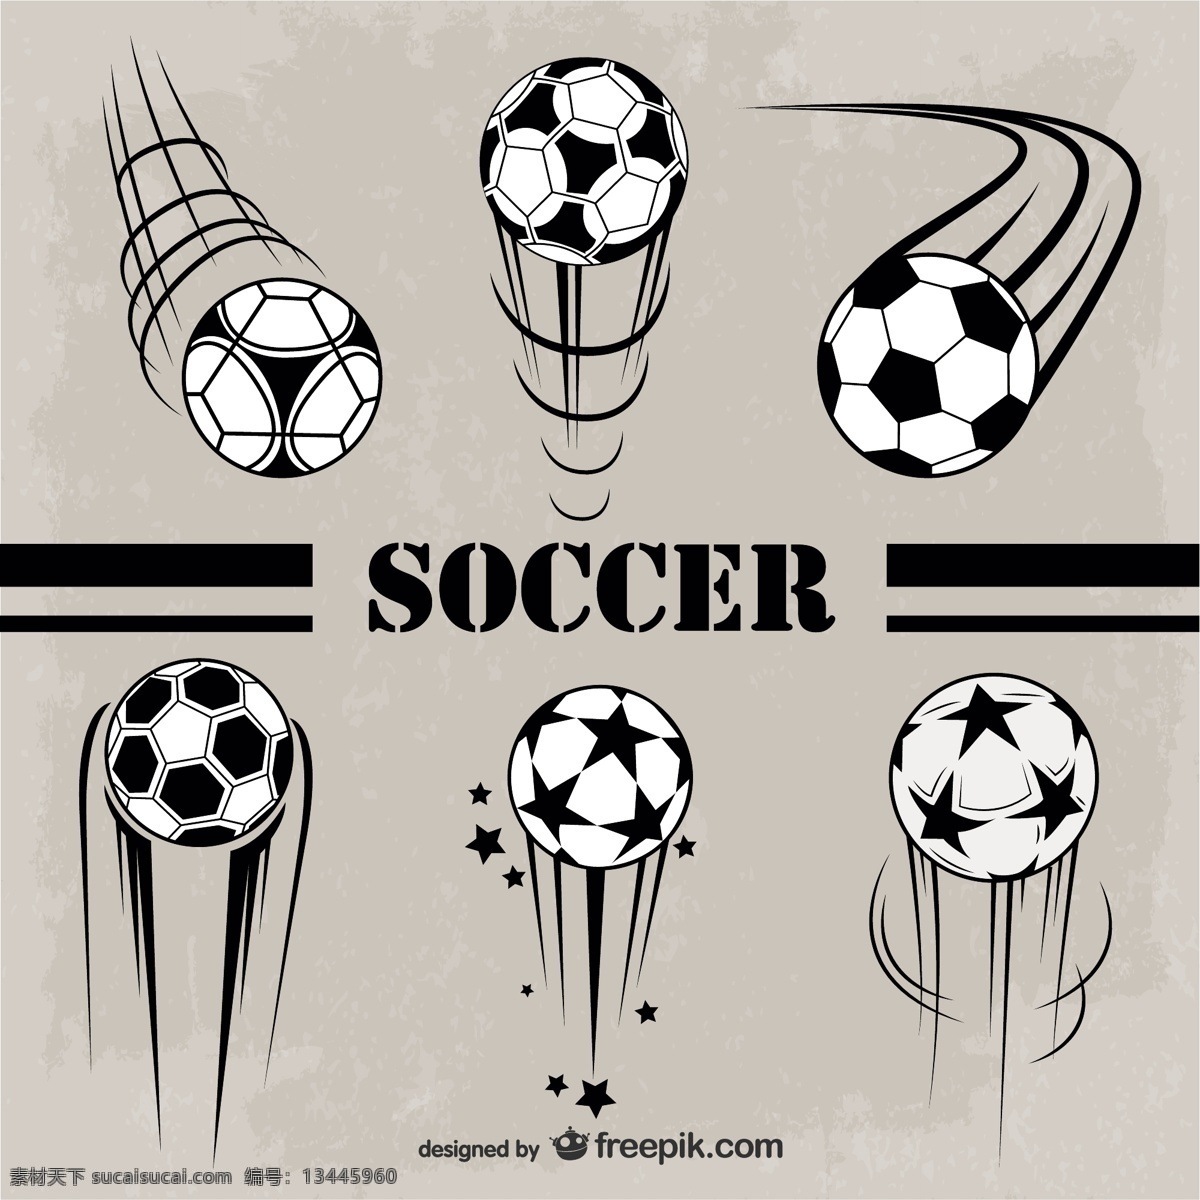 足球徽章 标志 图标 徽章 足球 体育 模板 标志设计 运动 壁纸 图形 布局 游戏 图形设计 杯子 球 灰色